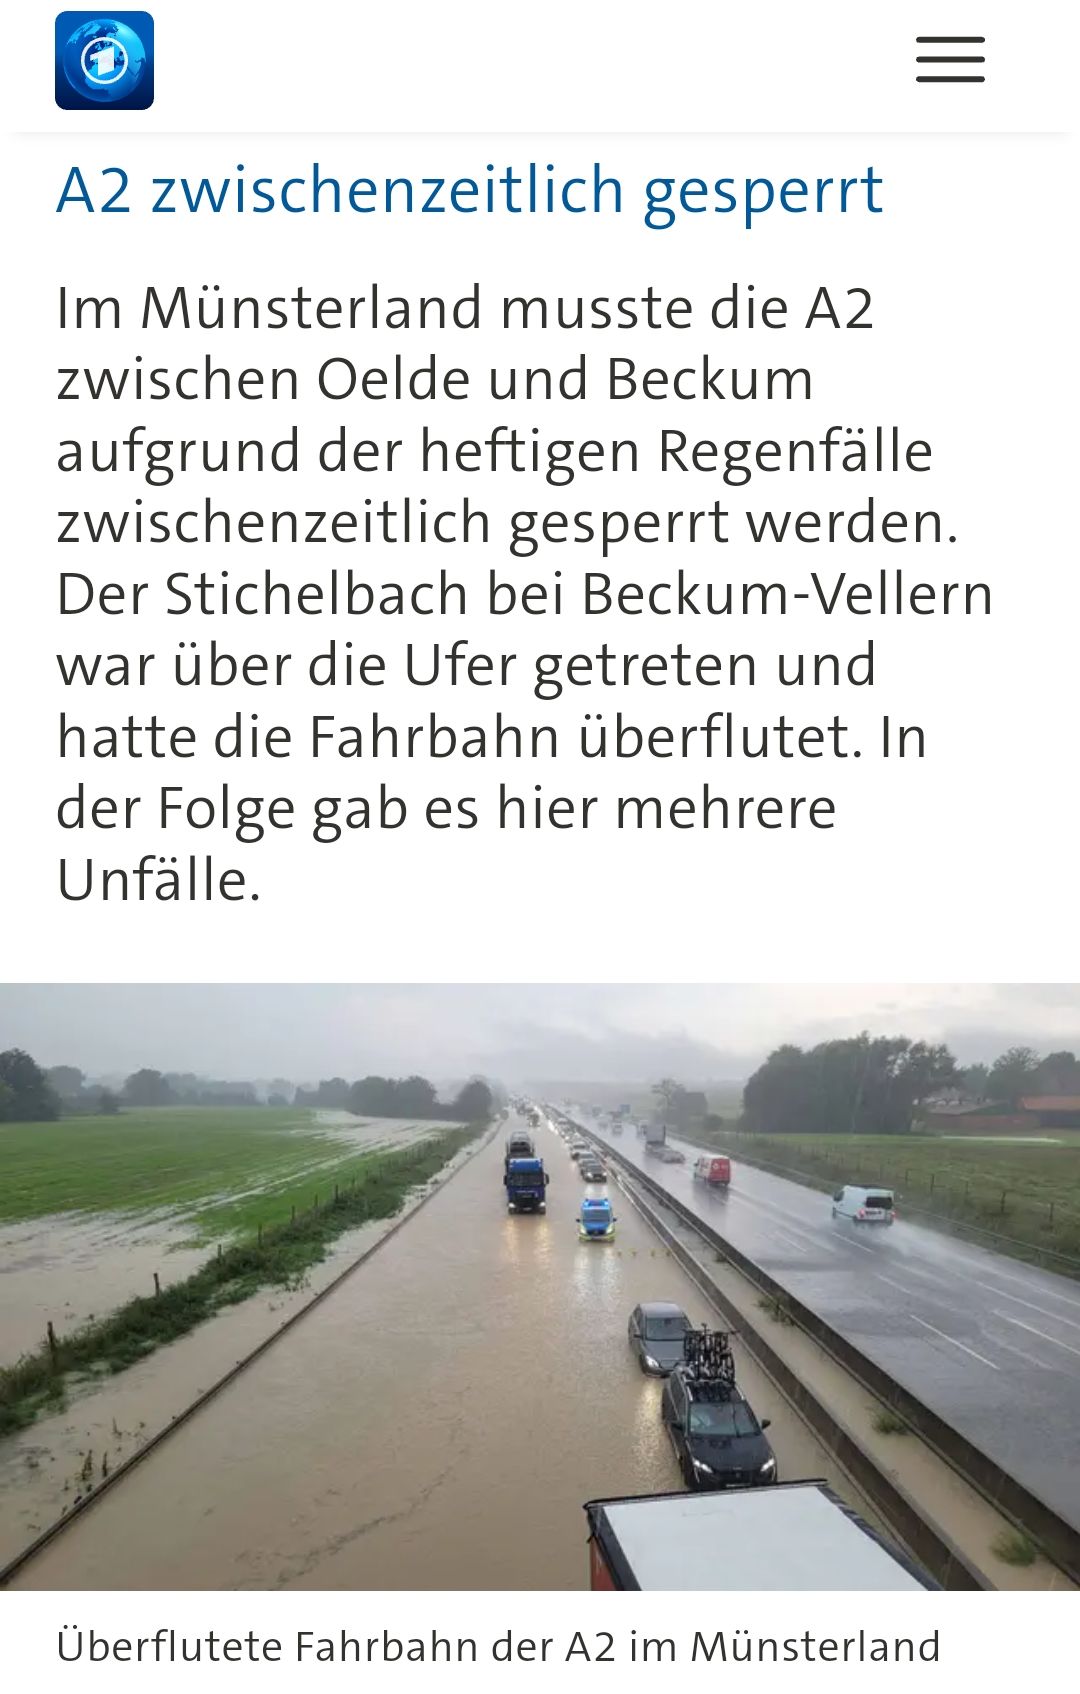 L'autoroute A2 inondée par de fortes pluies (6|6)